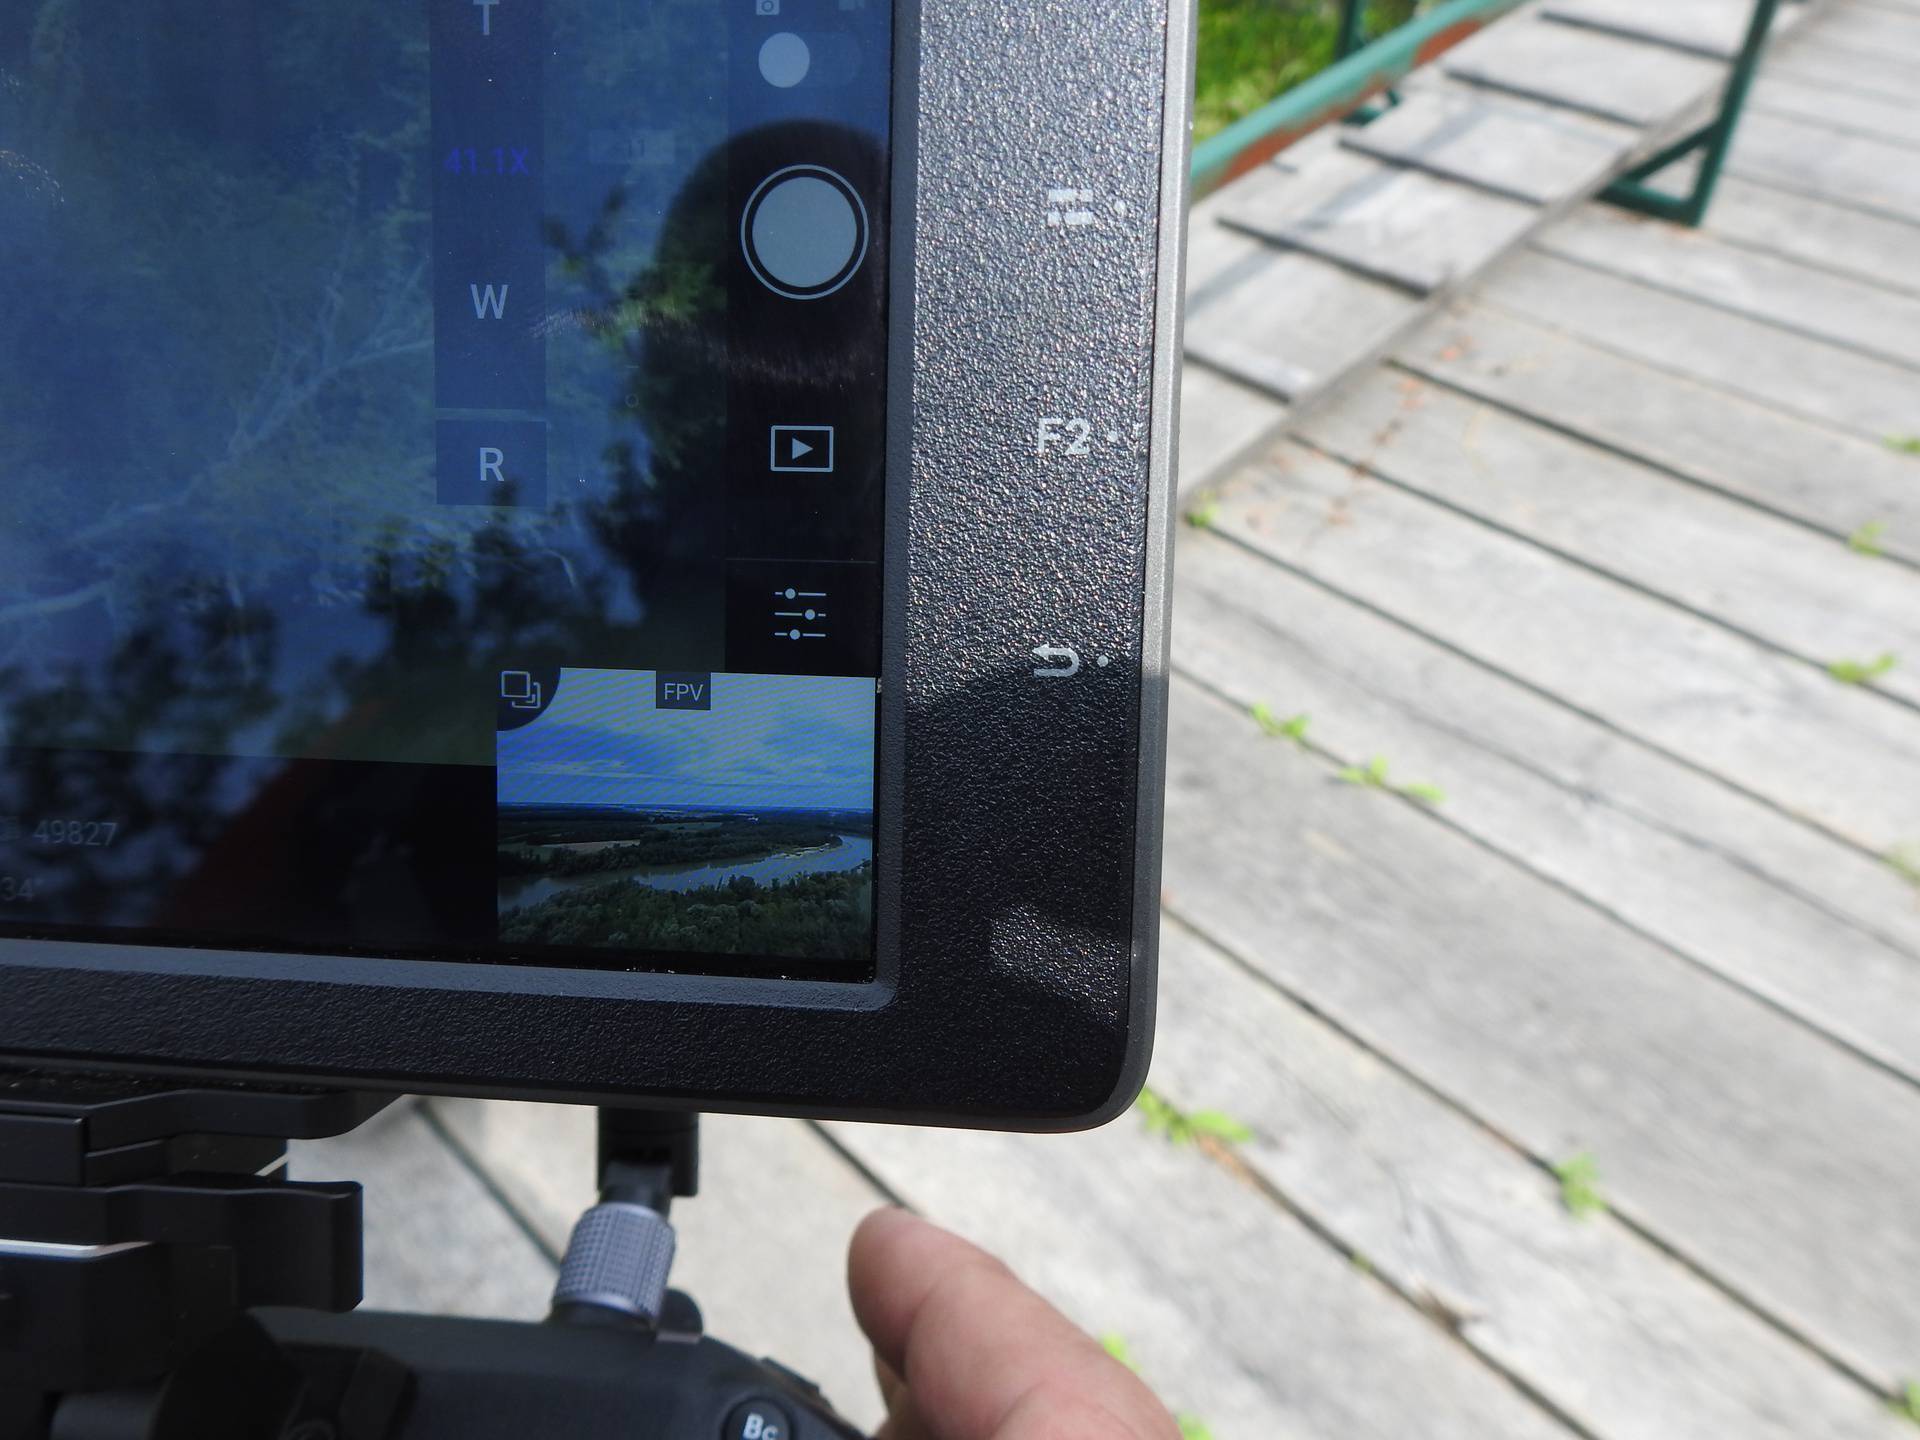 Obitelj ne gubi nadu: Muškarca nestalog u Dravi traže i dronom